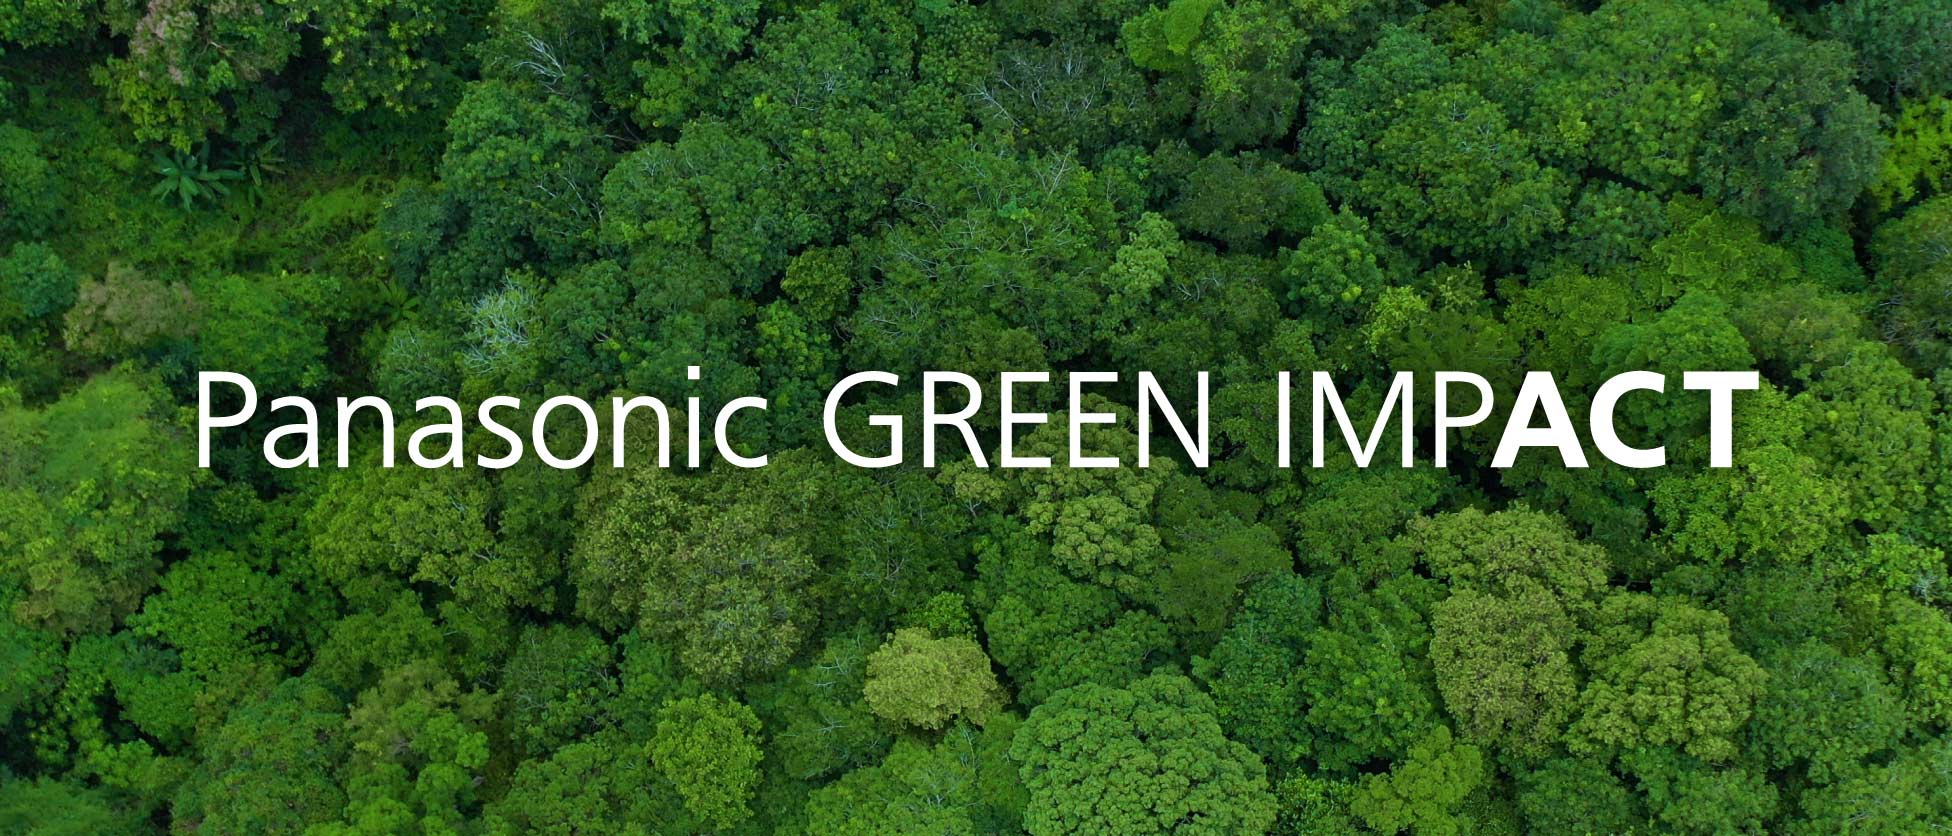 Panasonic GREEN IMPACT 2050年に向け、3億トン以上のCO2排出量削減を目指します。